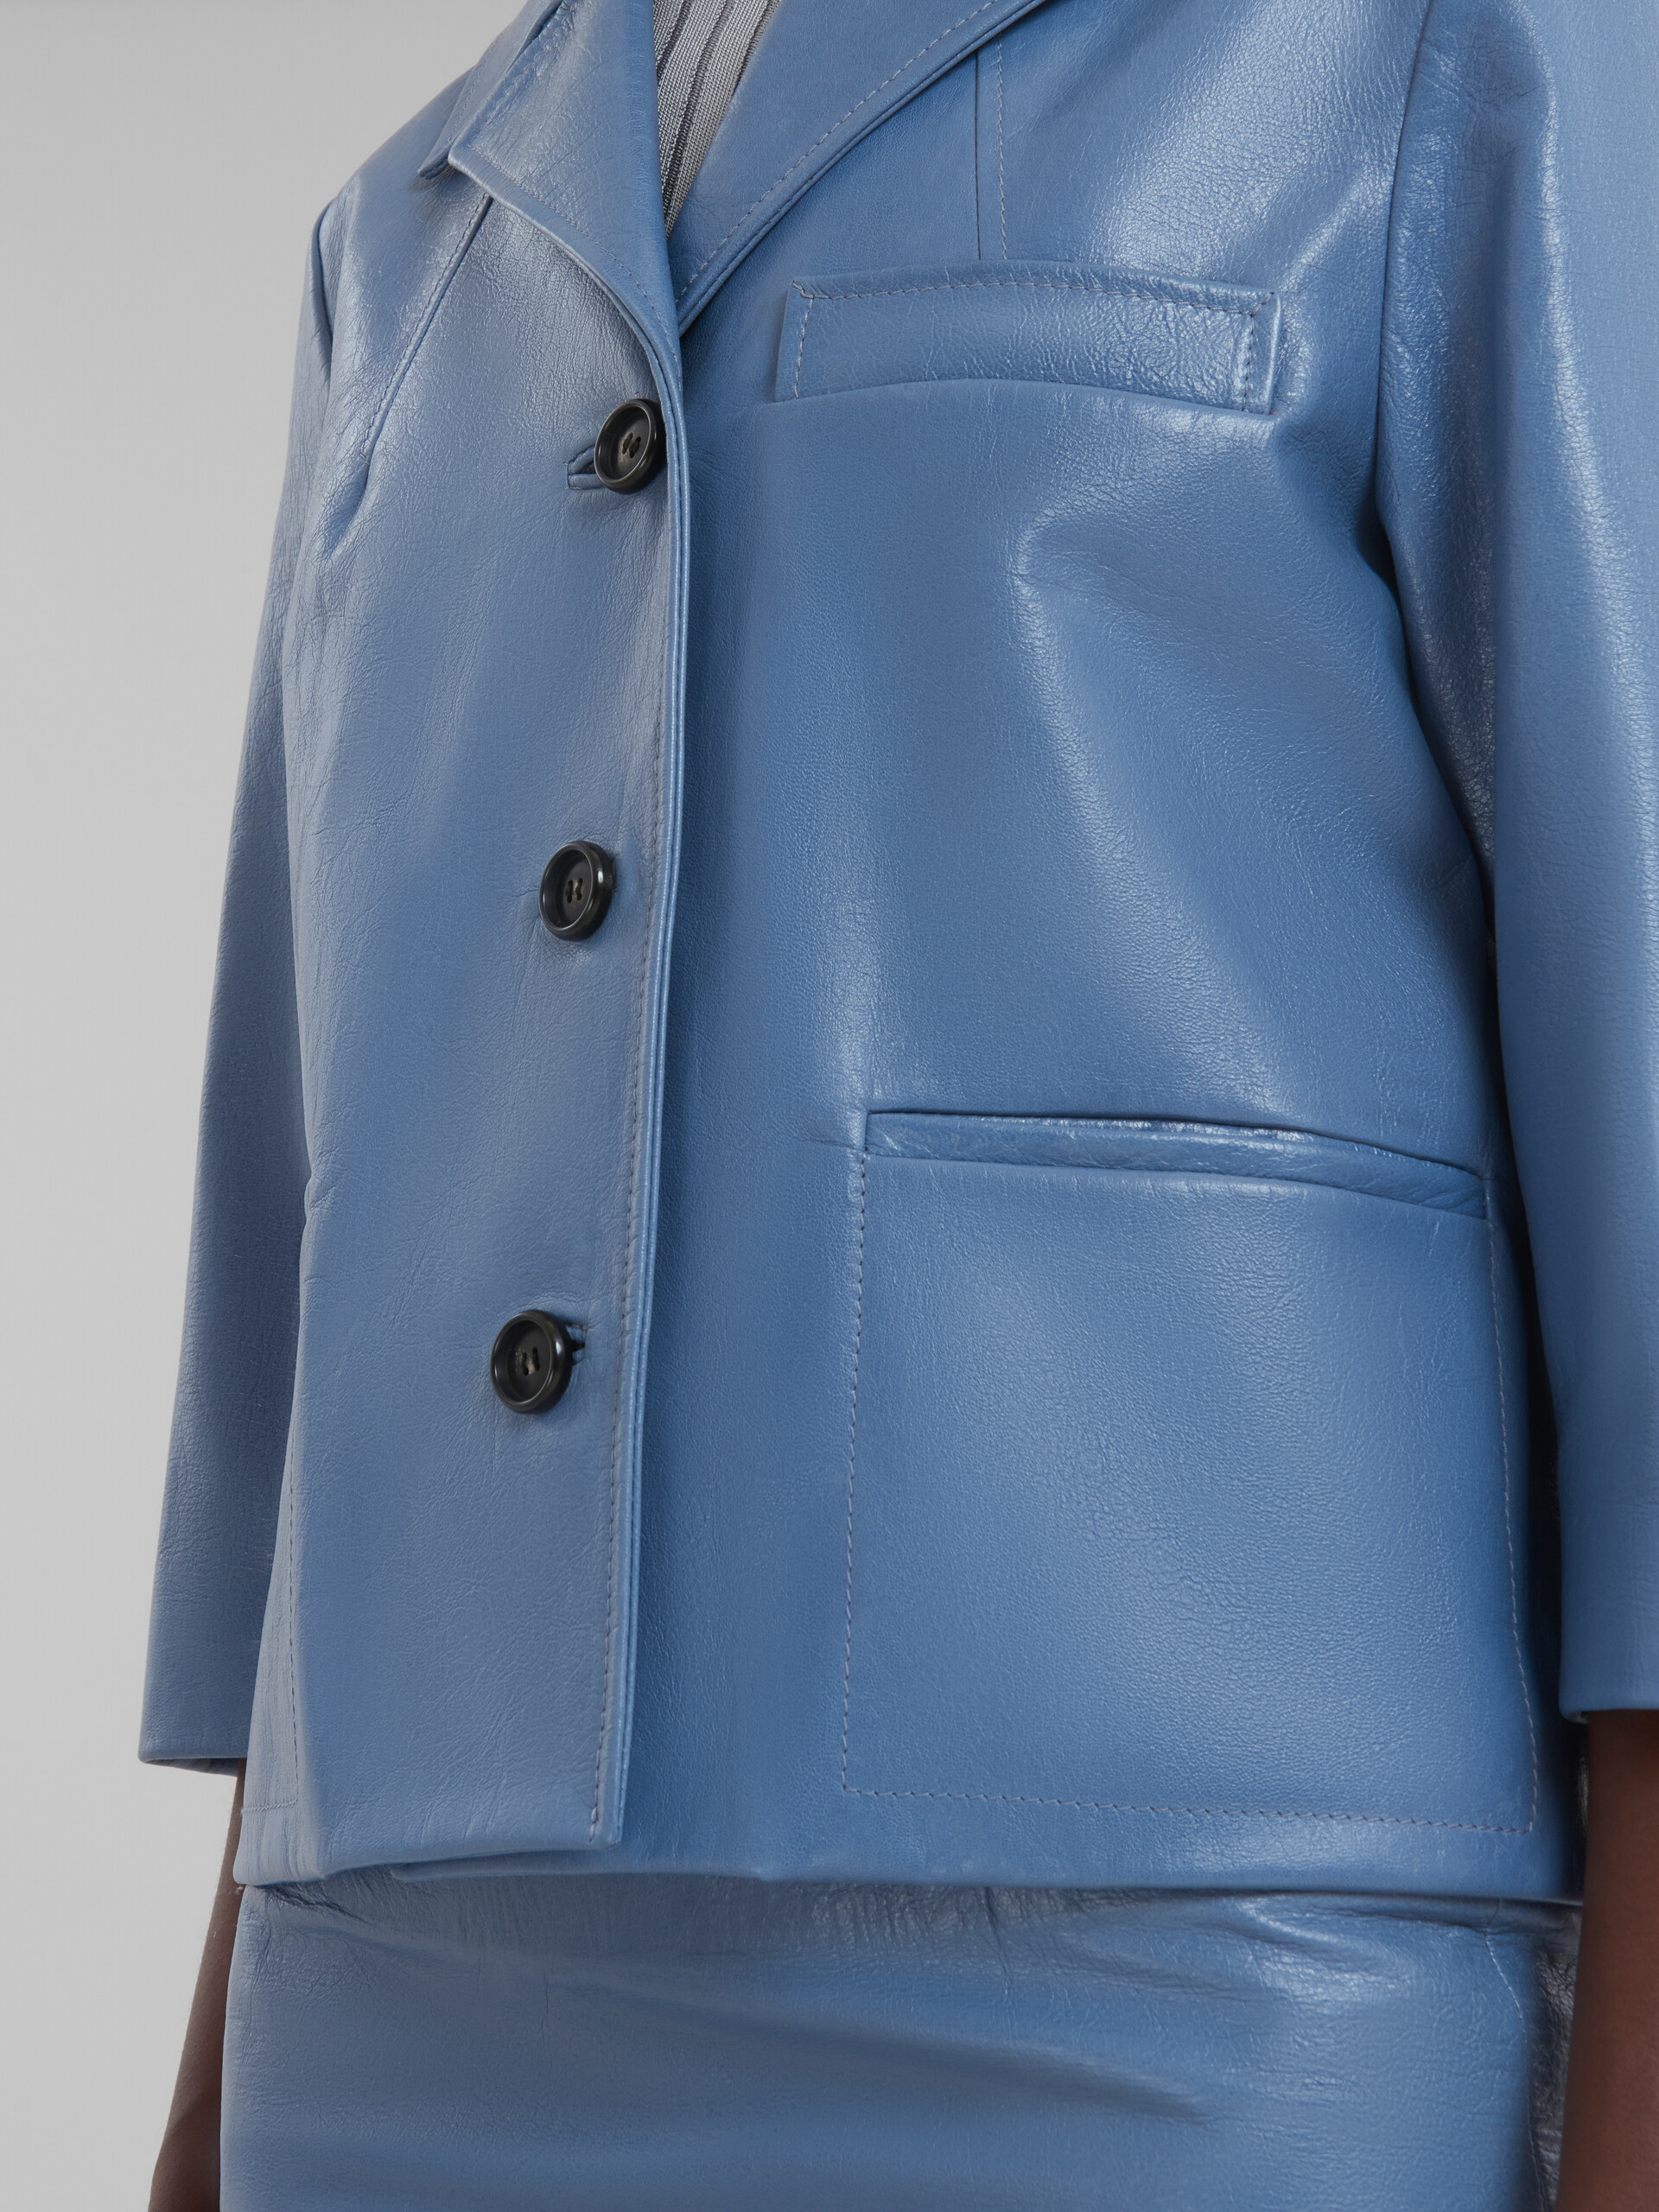 Blue shiny leather jacket - Jackets - Image 5